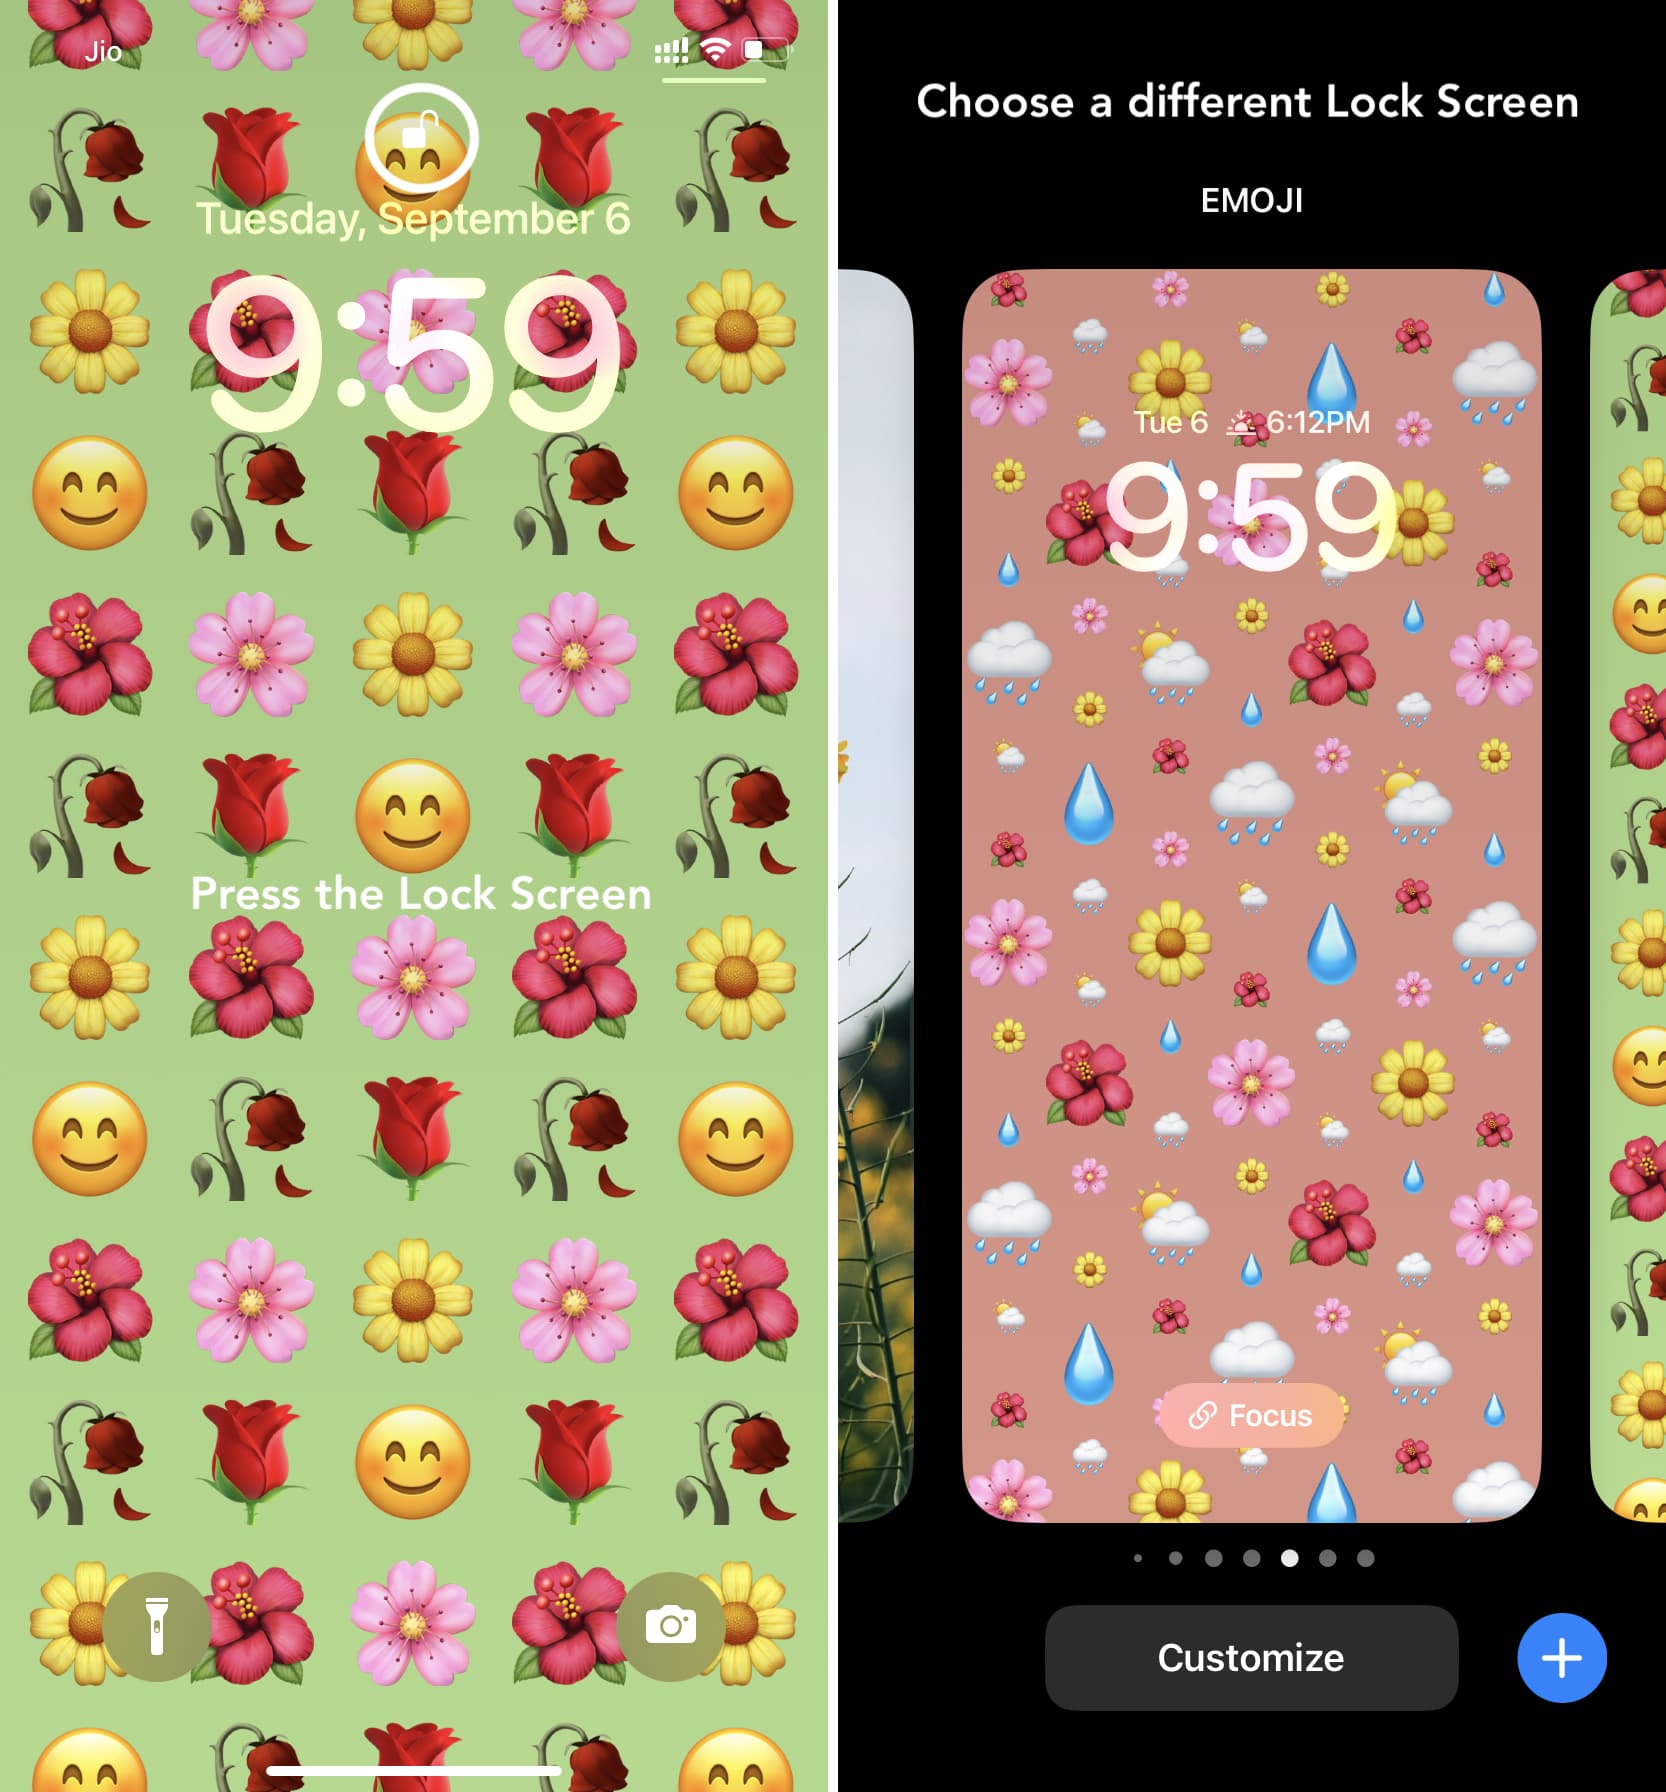 Switch between various emoji Lock Screens